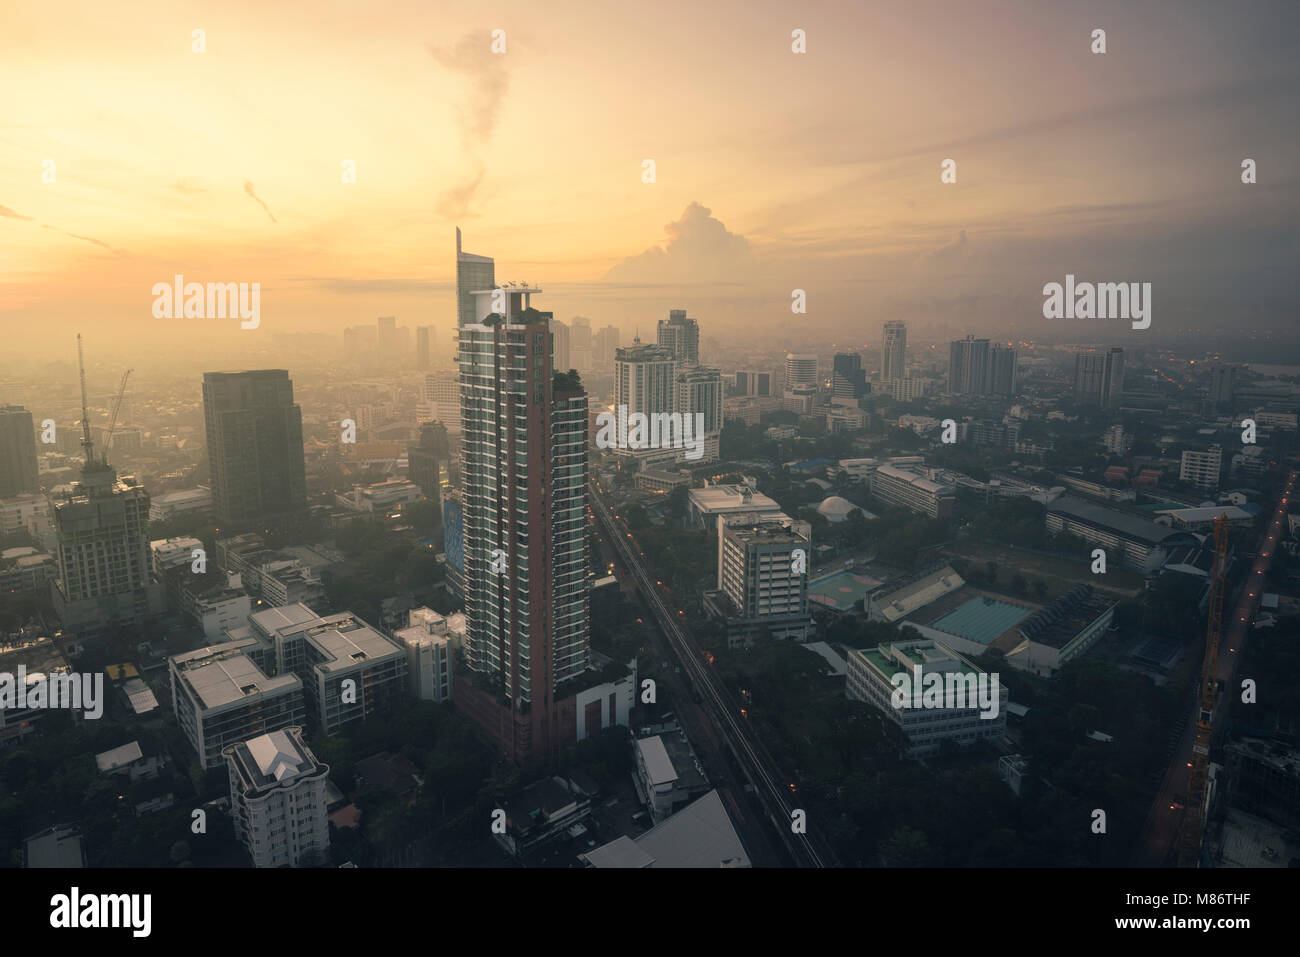 City skyline at sunrise, Bangkok, Thailand Stock Photo